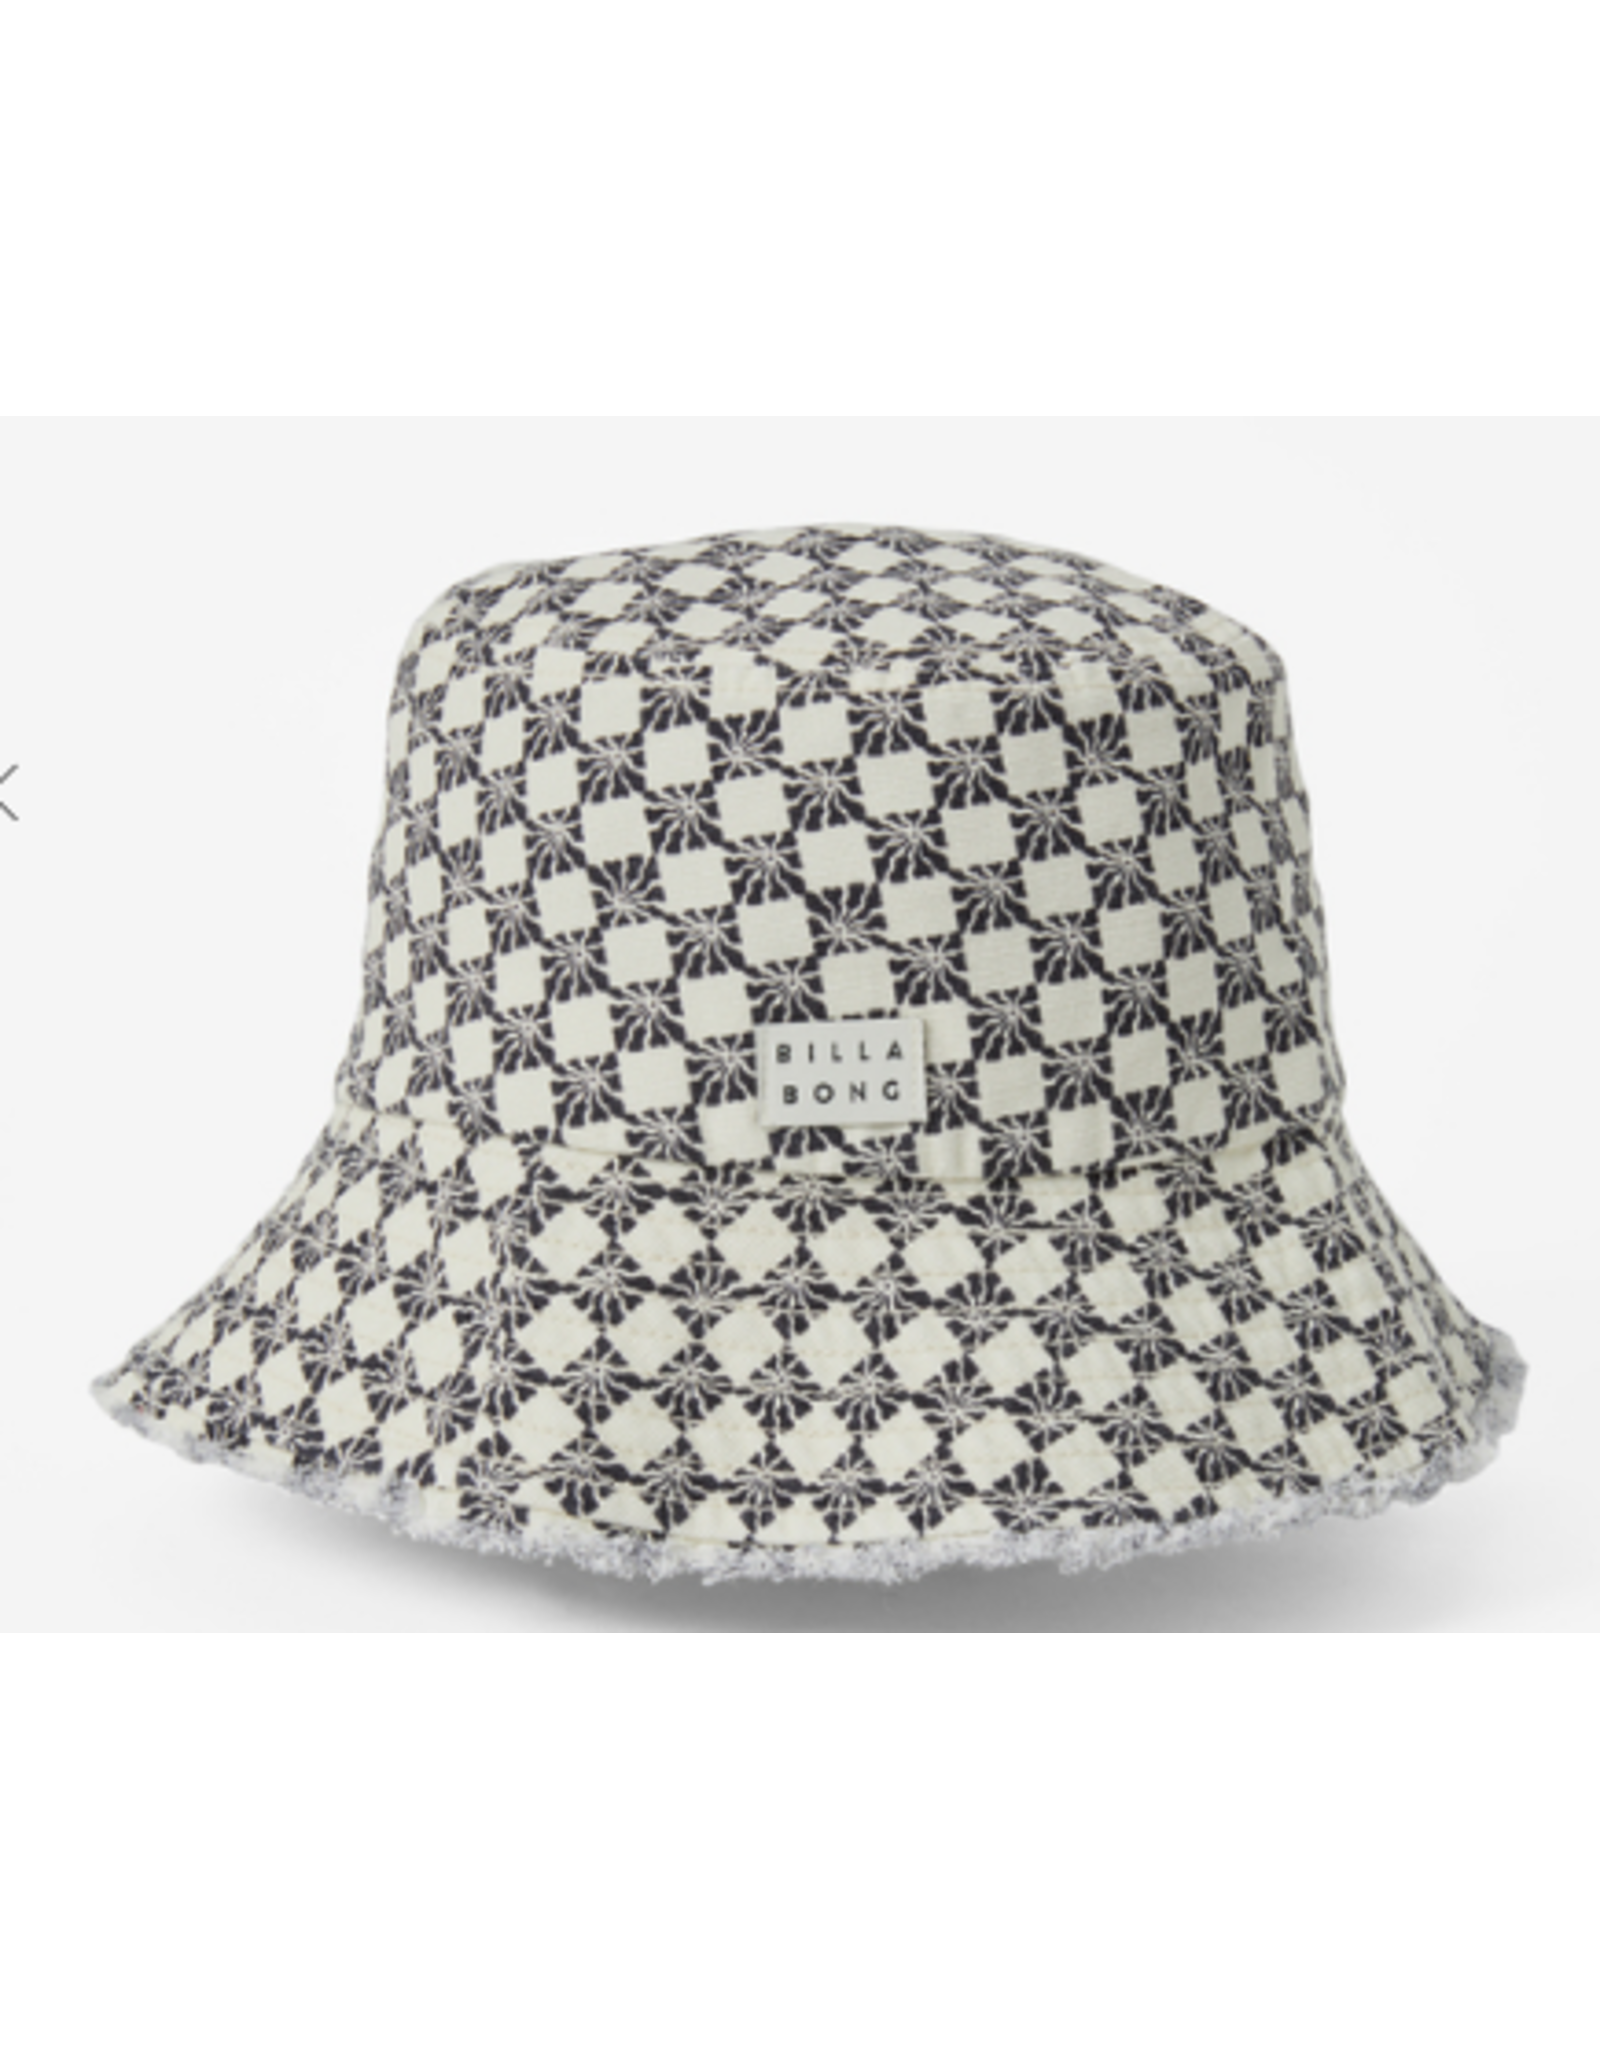 BILLABONG Suns Out Bucket Hat